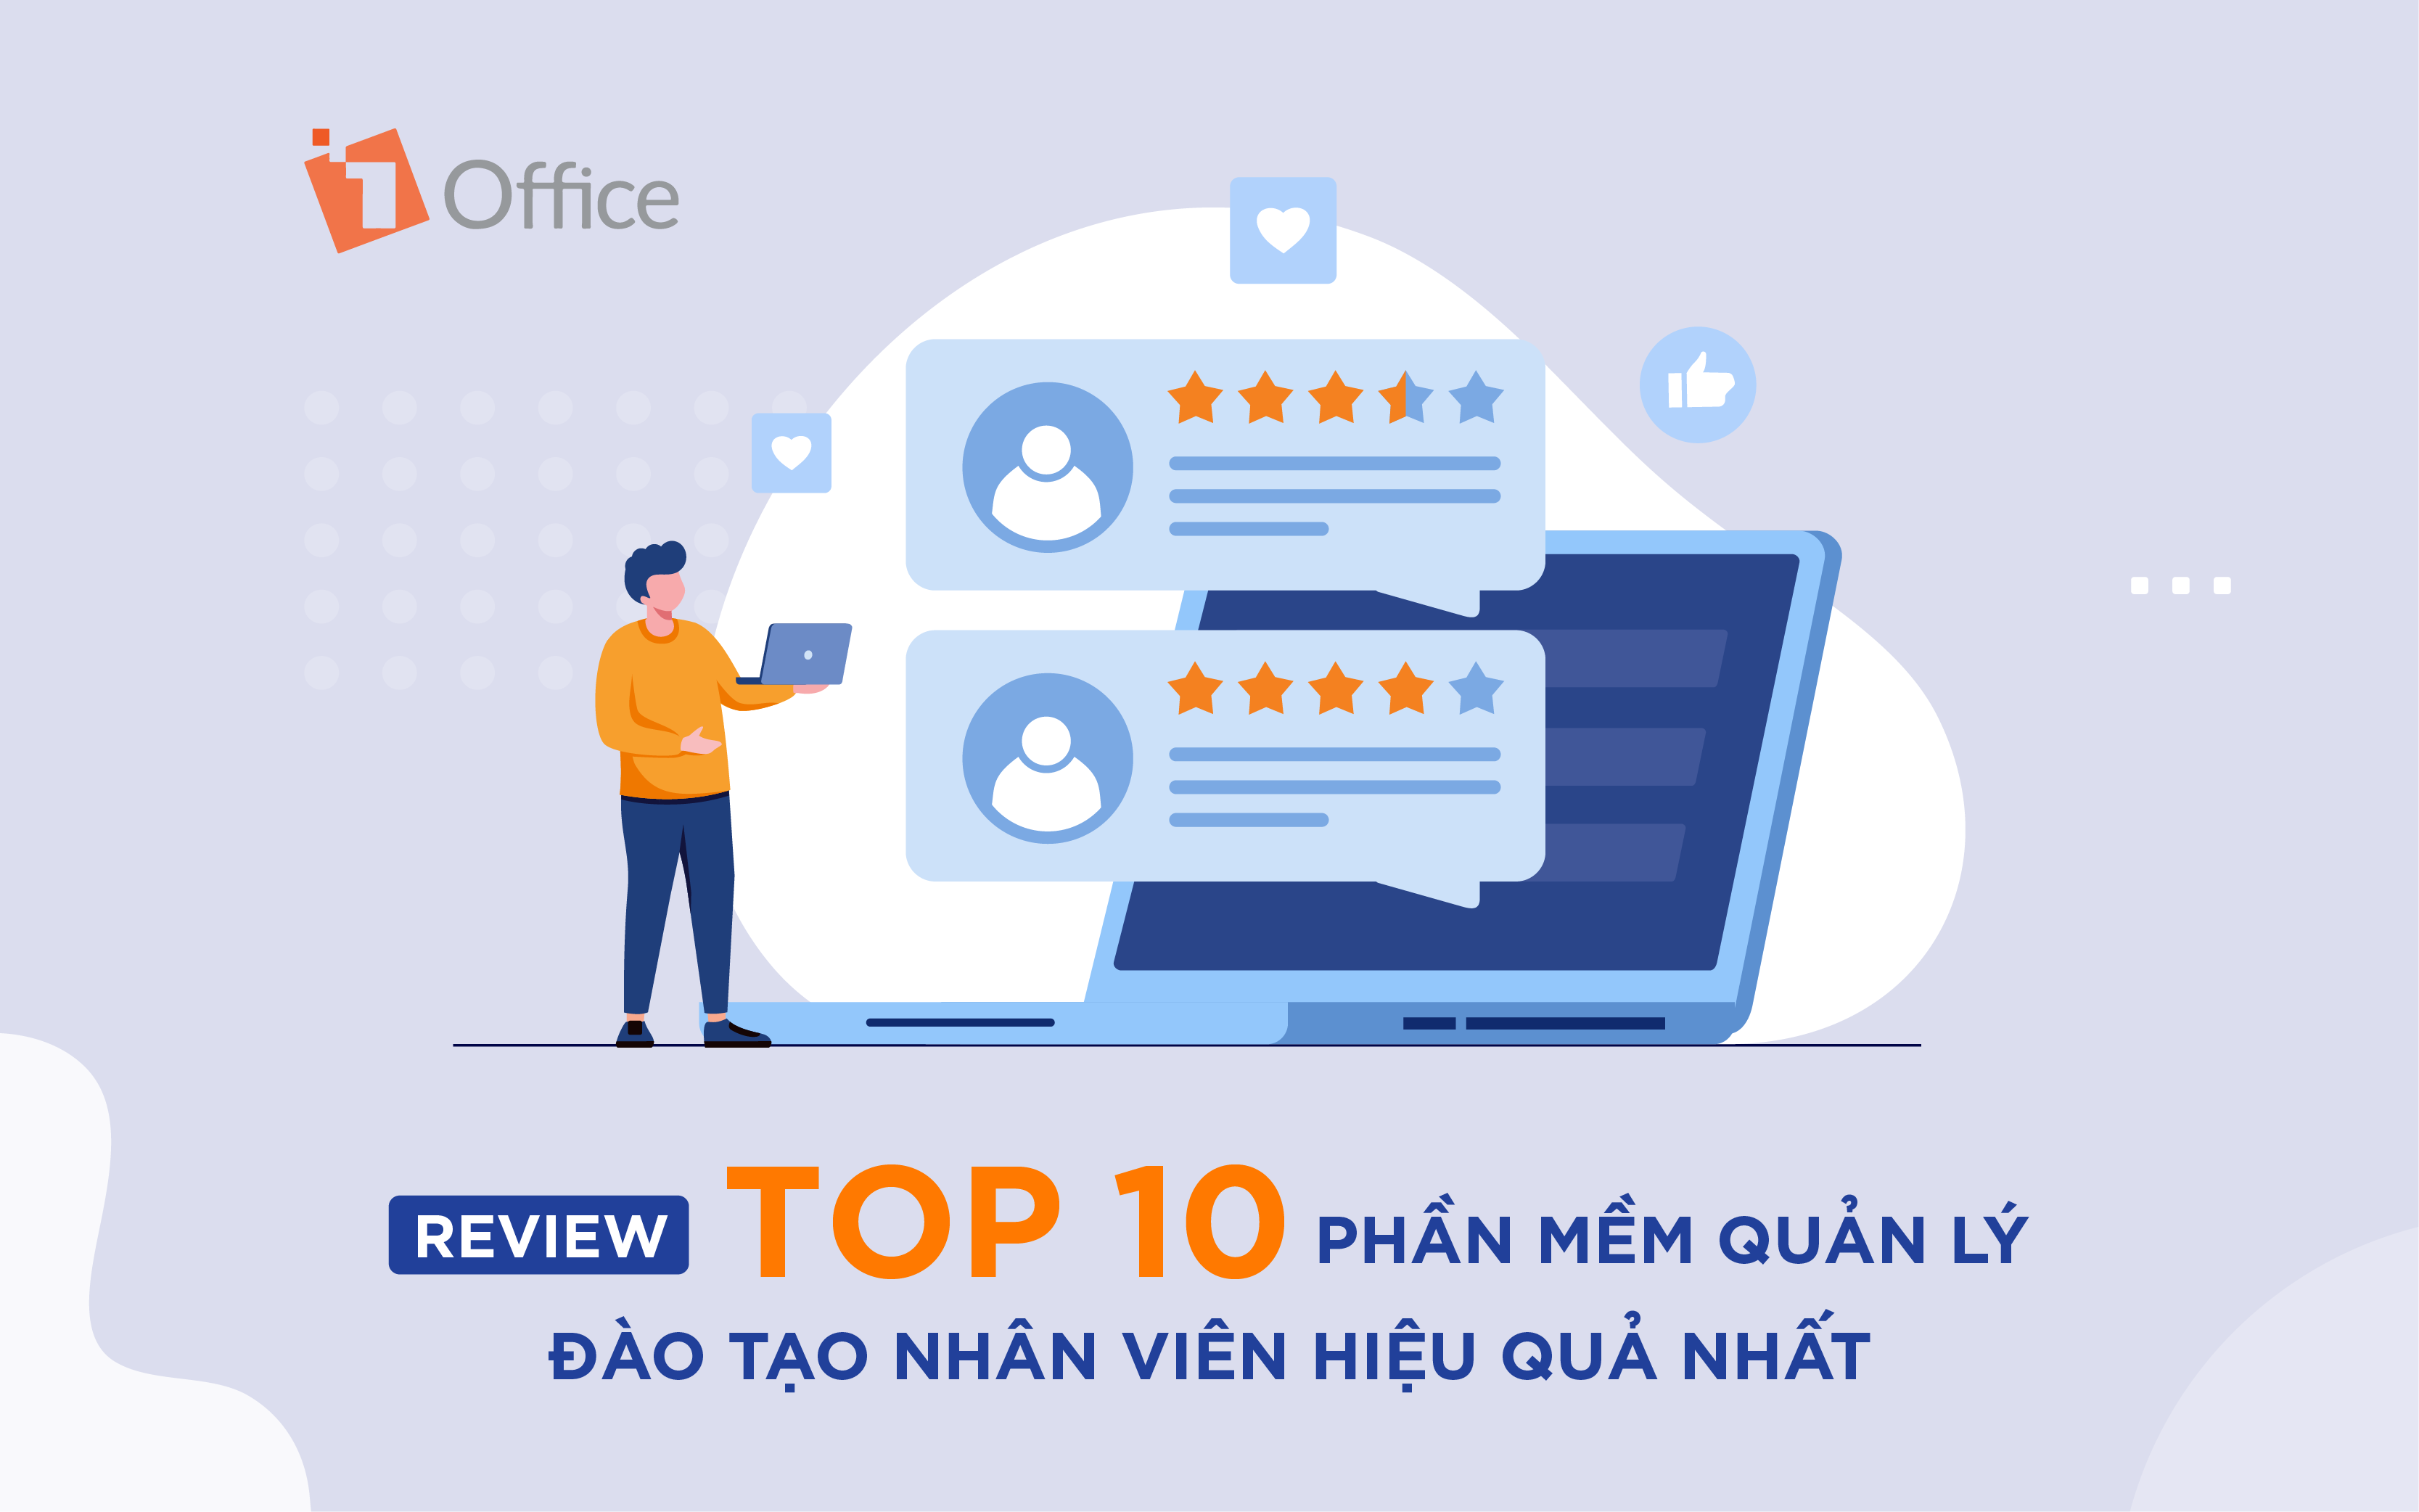 Review chi tiết TOP 10 phần mềm quản lý đào tạo nhân viên hiệu quả nhất hiện nay